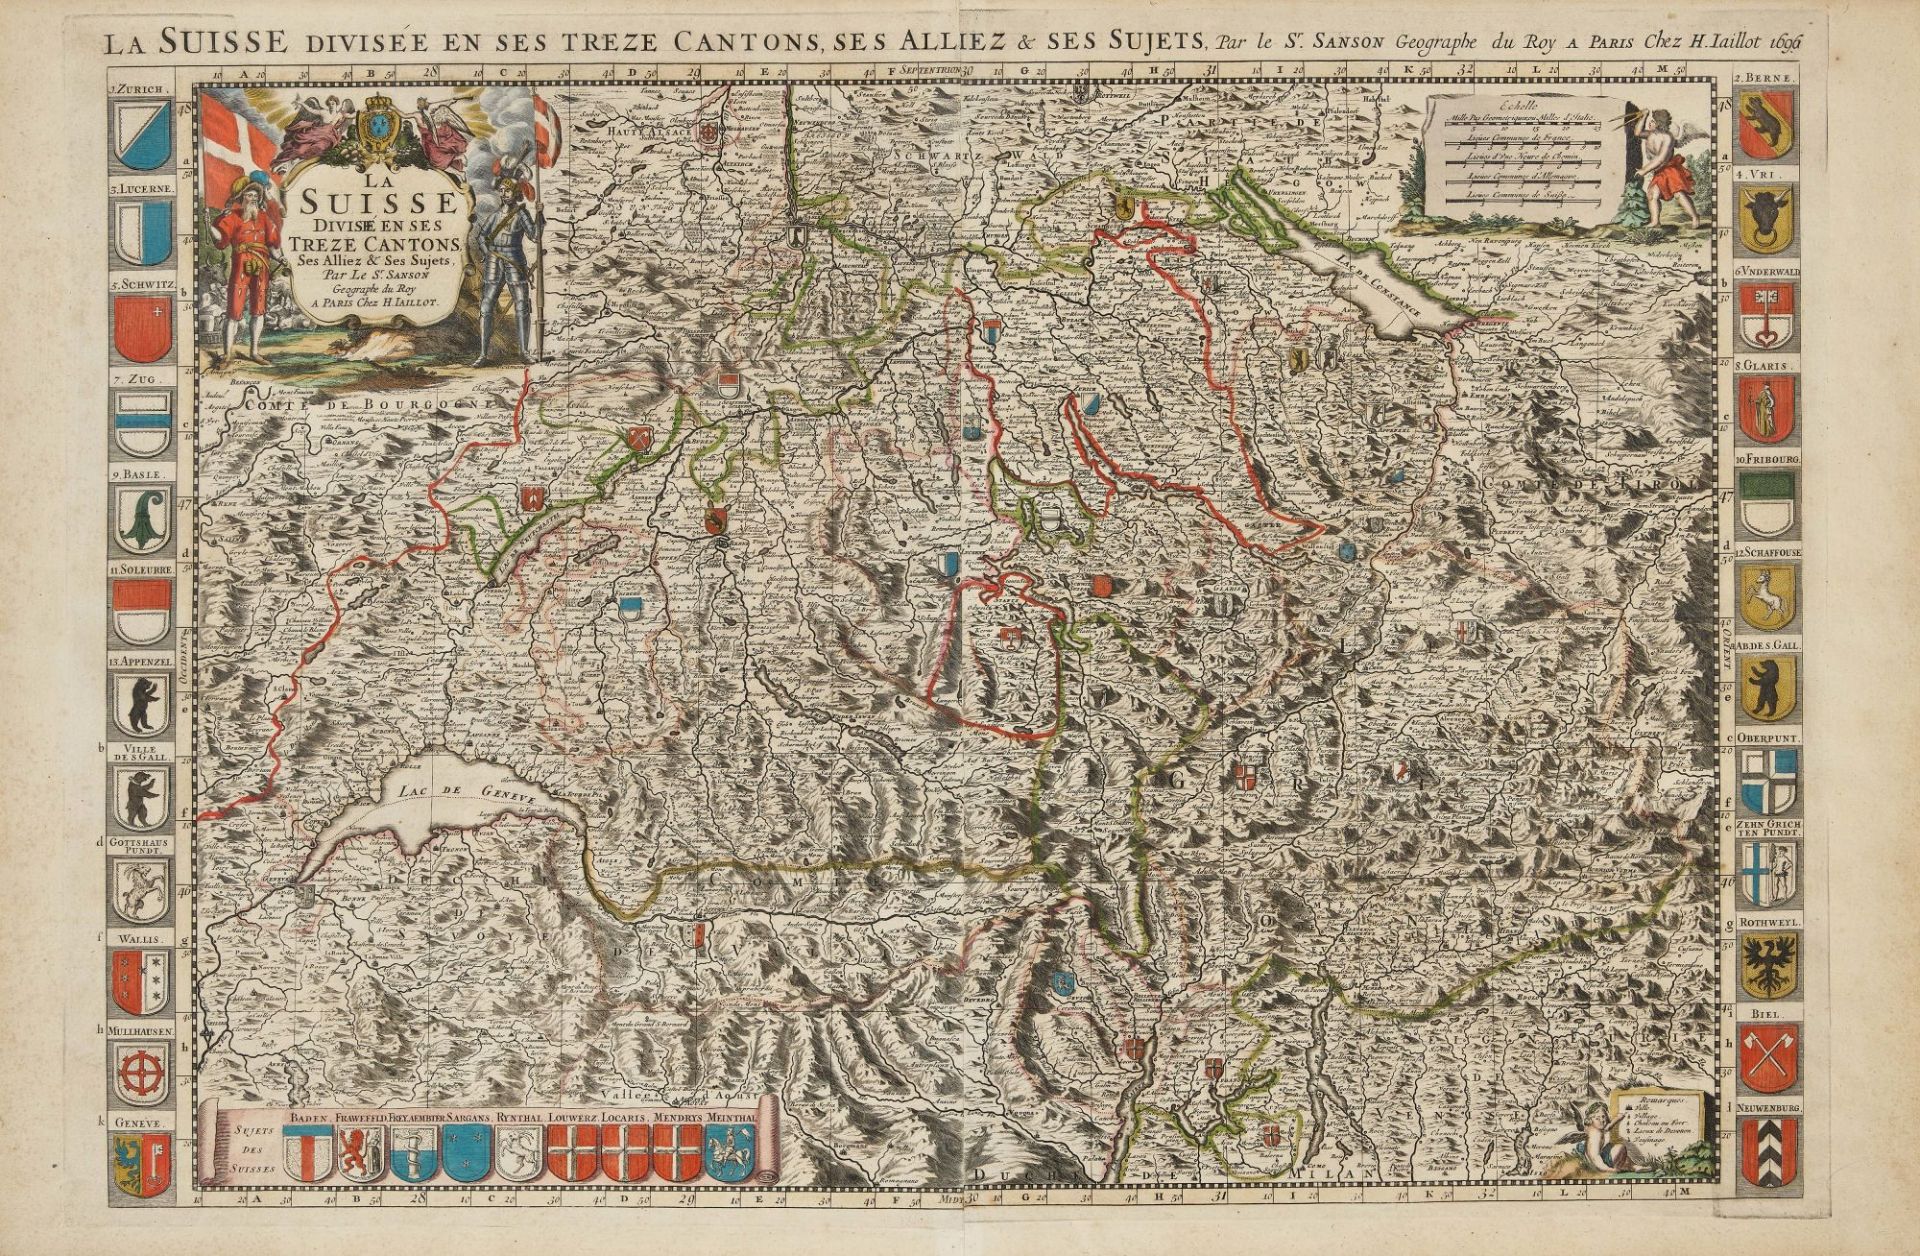 SANSON D'ABBEVILLE, NICOLAS, JAILLOT, ALEXIS HUBERT: "La Suisse divisée en ses treze Cantons".